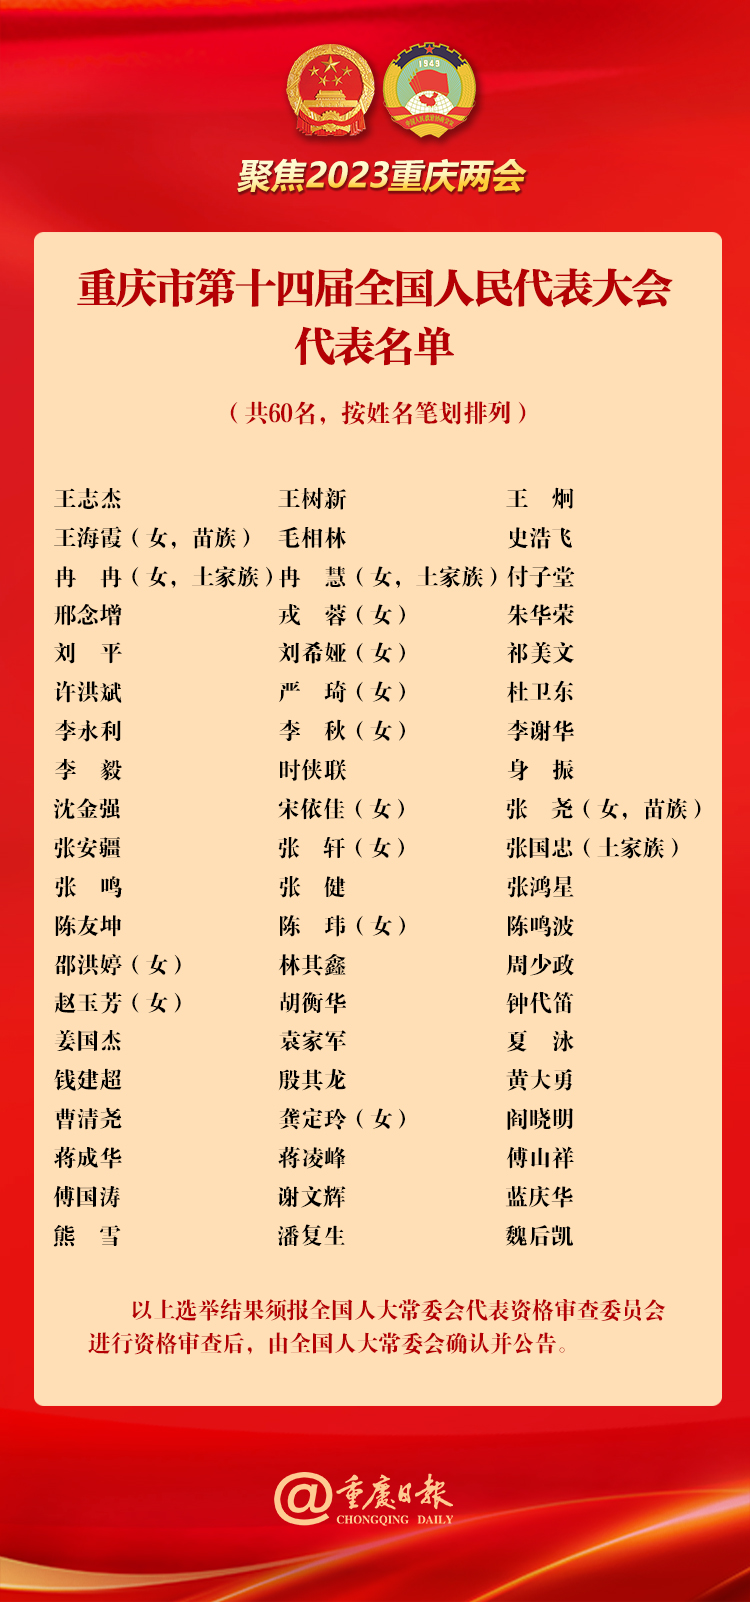 重庆选举产生出席第十四届全国人民代表大会代表60名 中央提名的代表候选人袁家军等6位同志当选